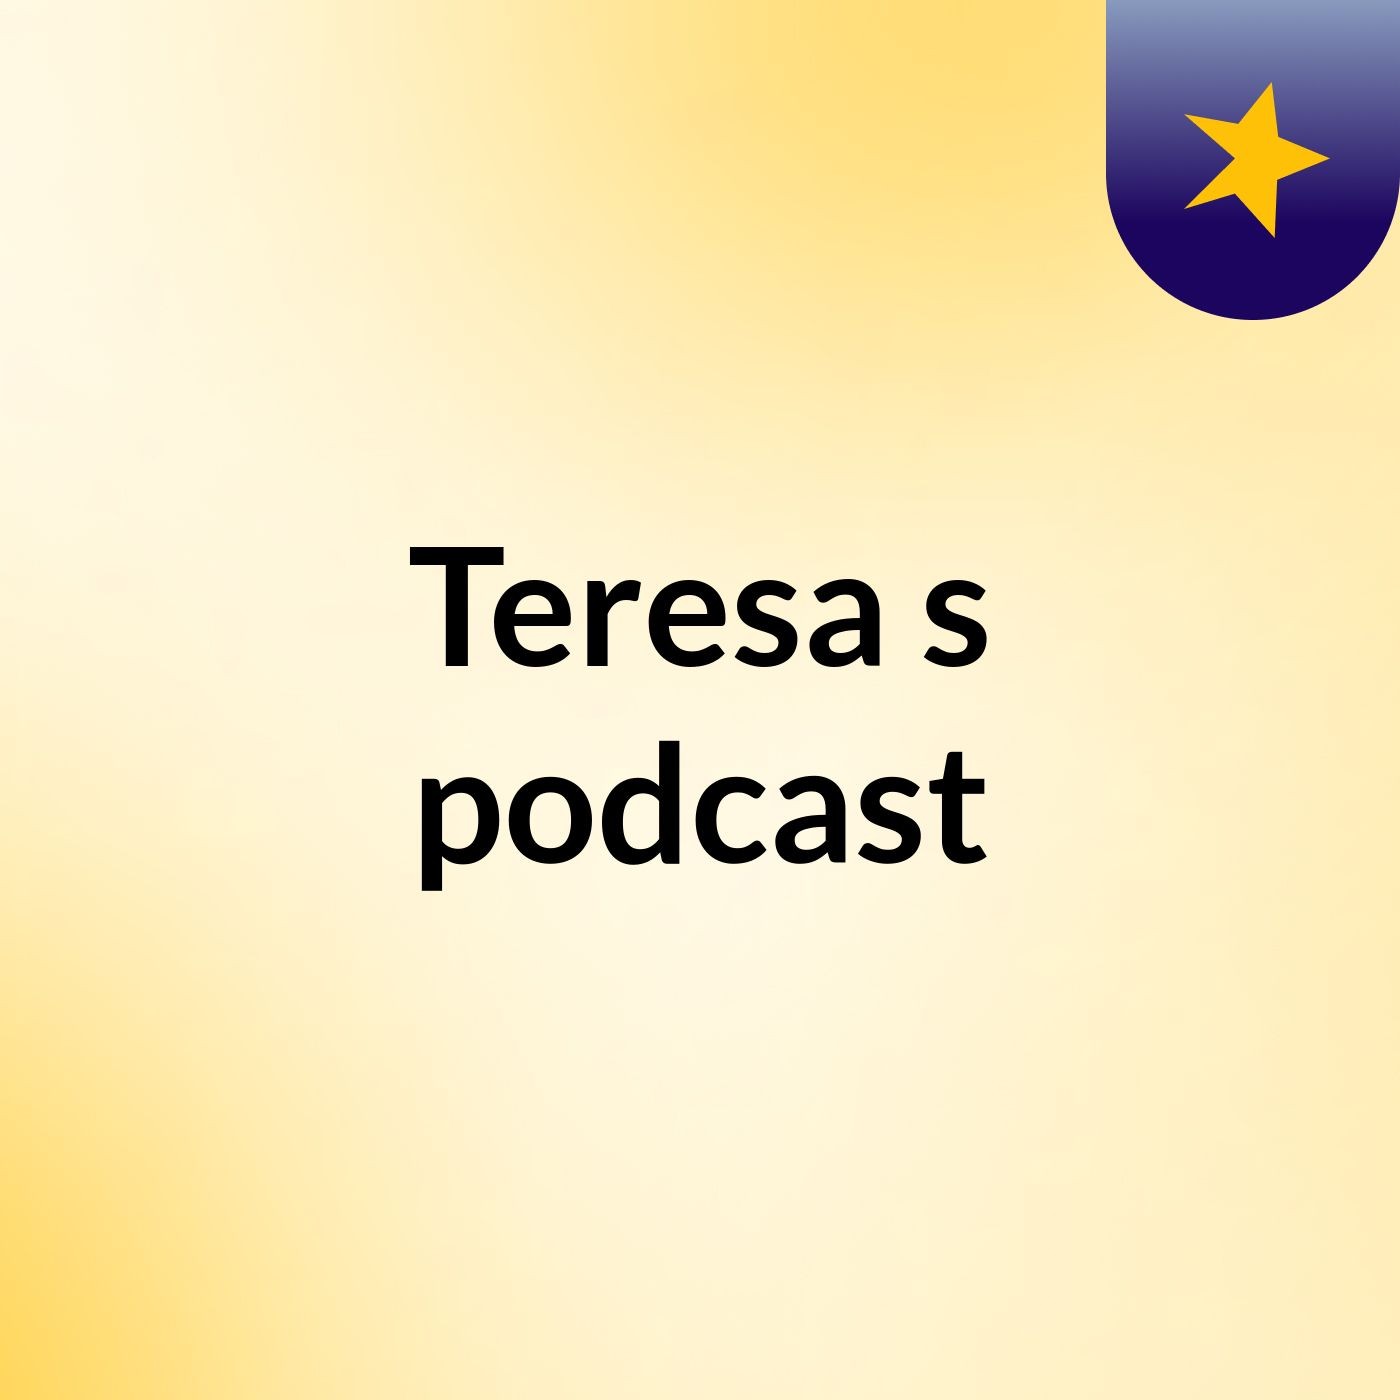 Teresa's podcast